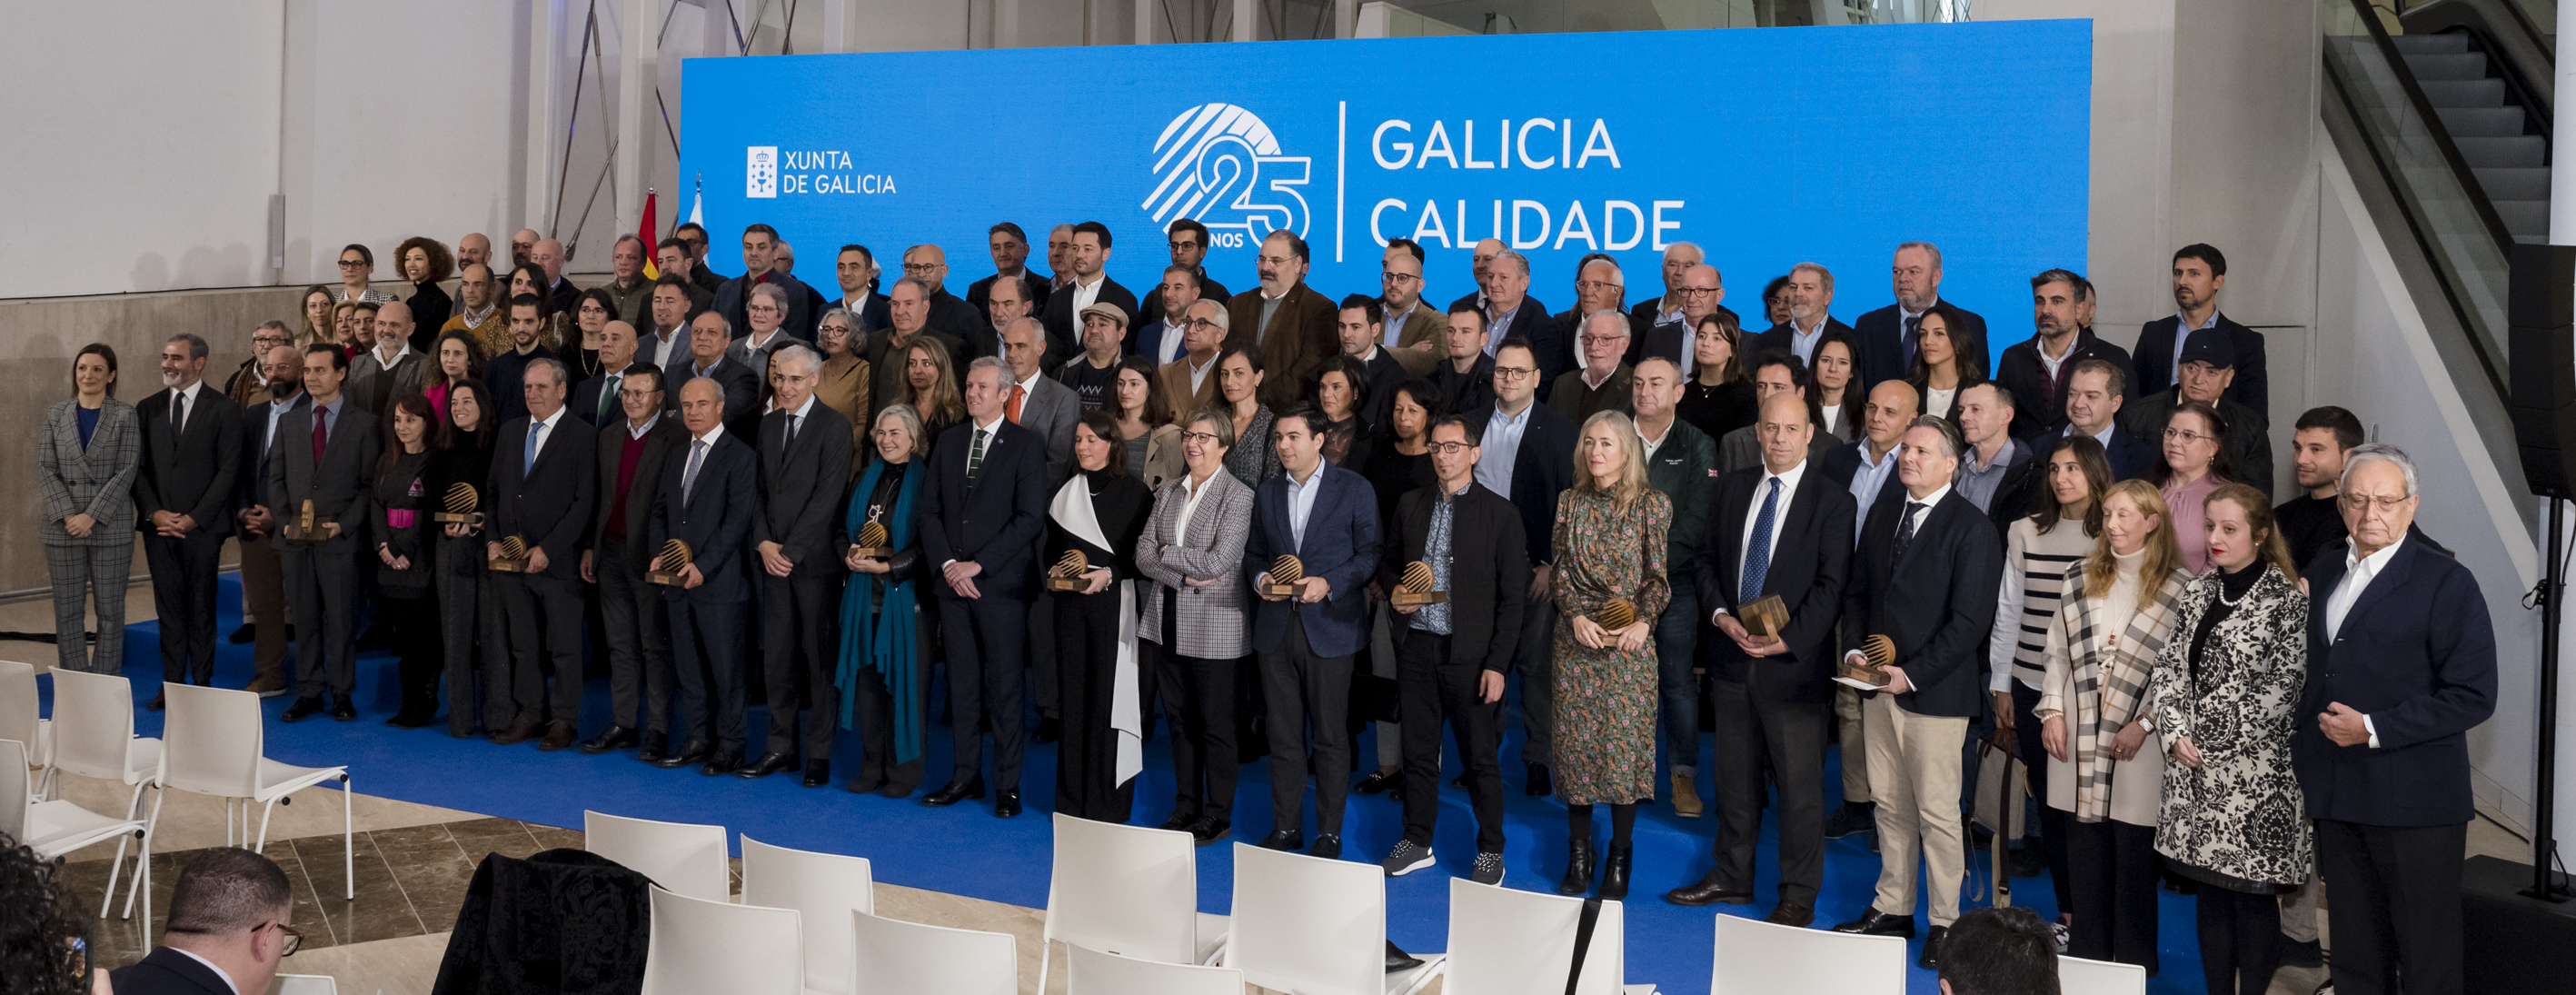 Rueda celebra que o éxito da marca Galicia Calidade asociara para sempre a excelencia ao nome e aos produtos da Comunidade